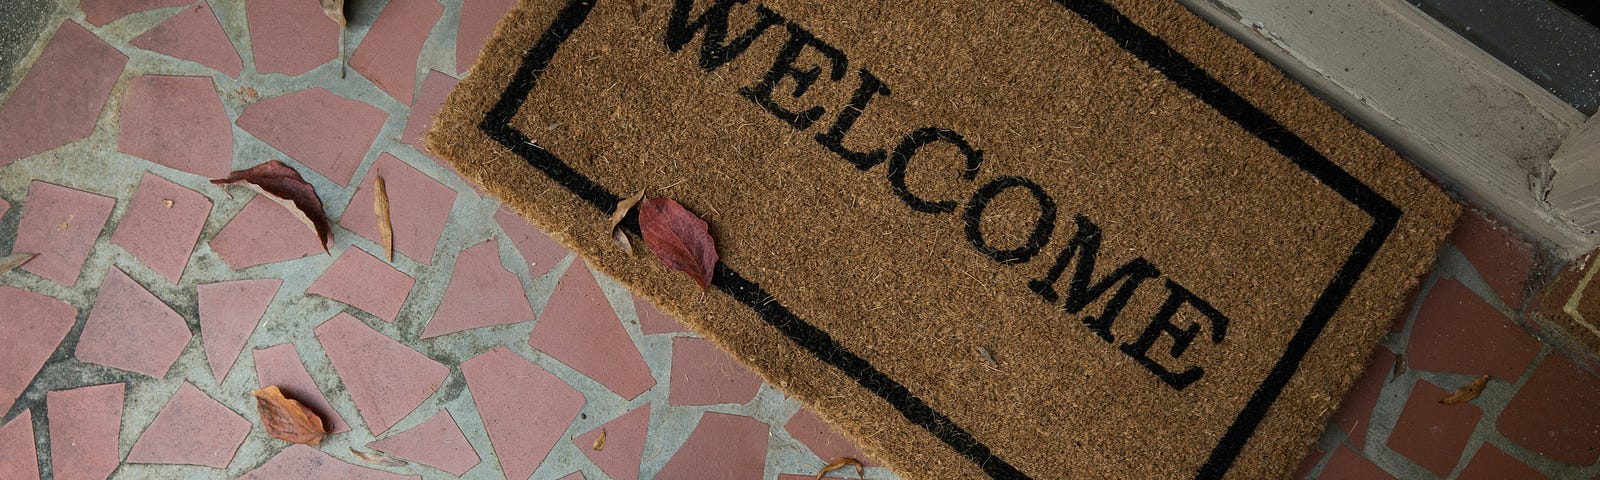 A welcome mat in front of a door